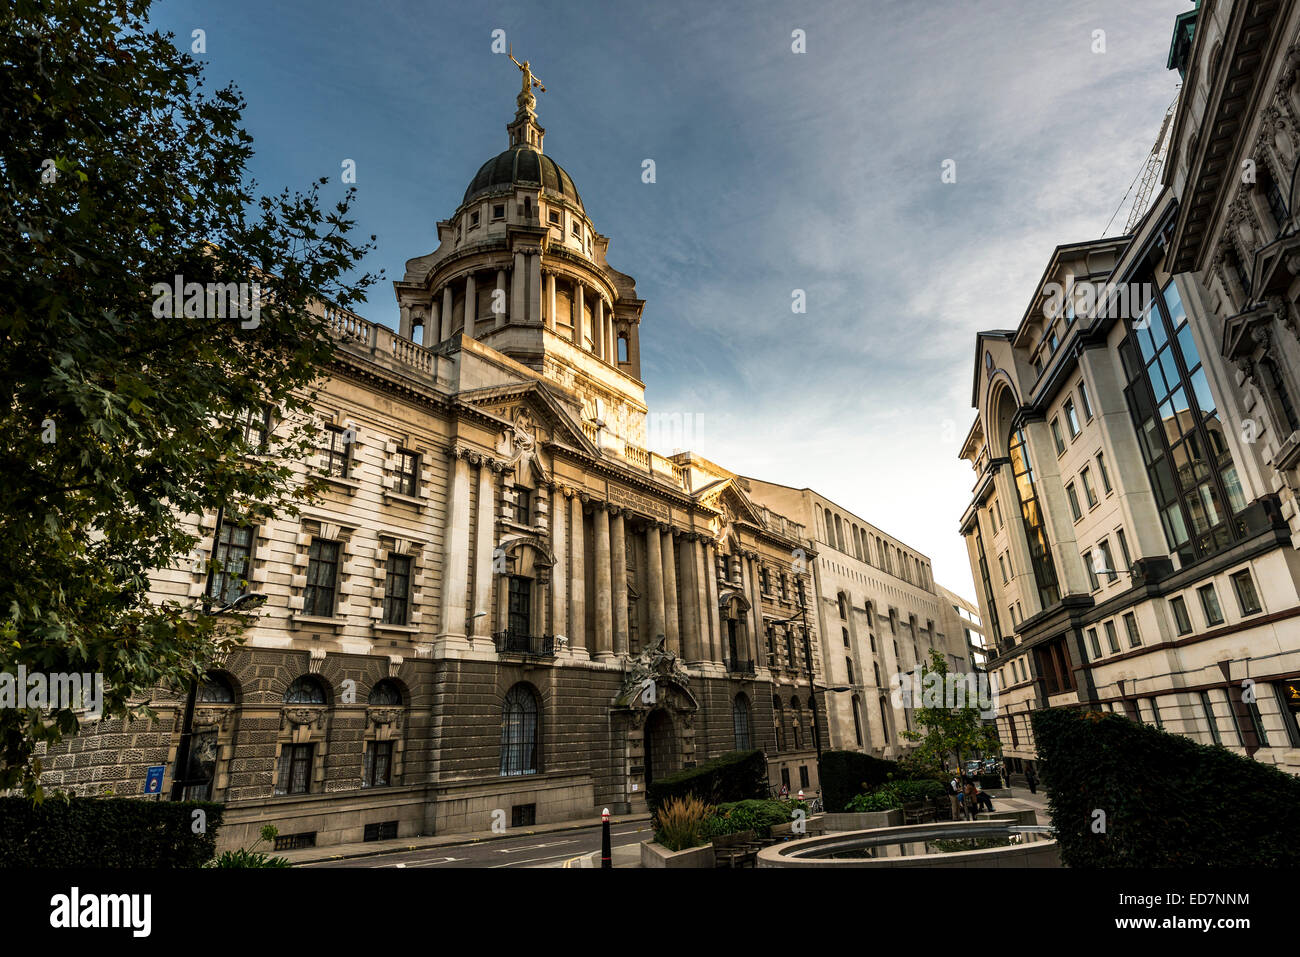 La Cour Criminelle Centrale d'Angleterre et du Pays de Galles connu sous le nom de Old Bailey à partir de la rue dans laquelle il se trouve. Banque D'Images